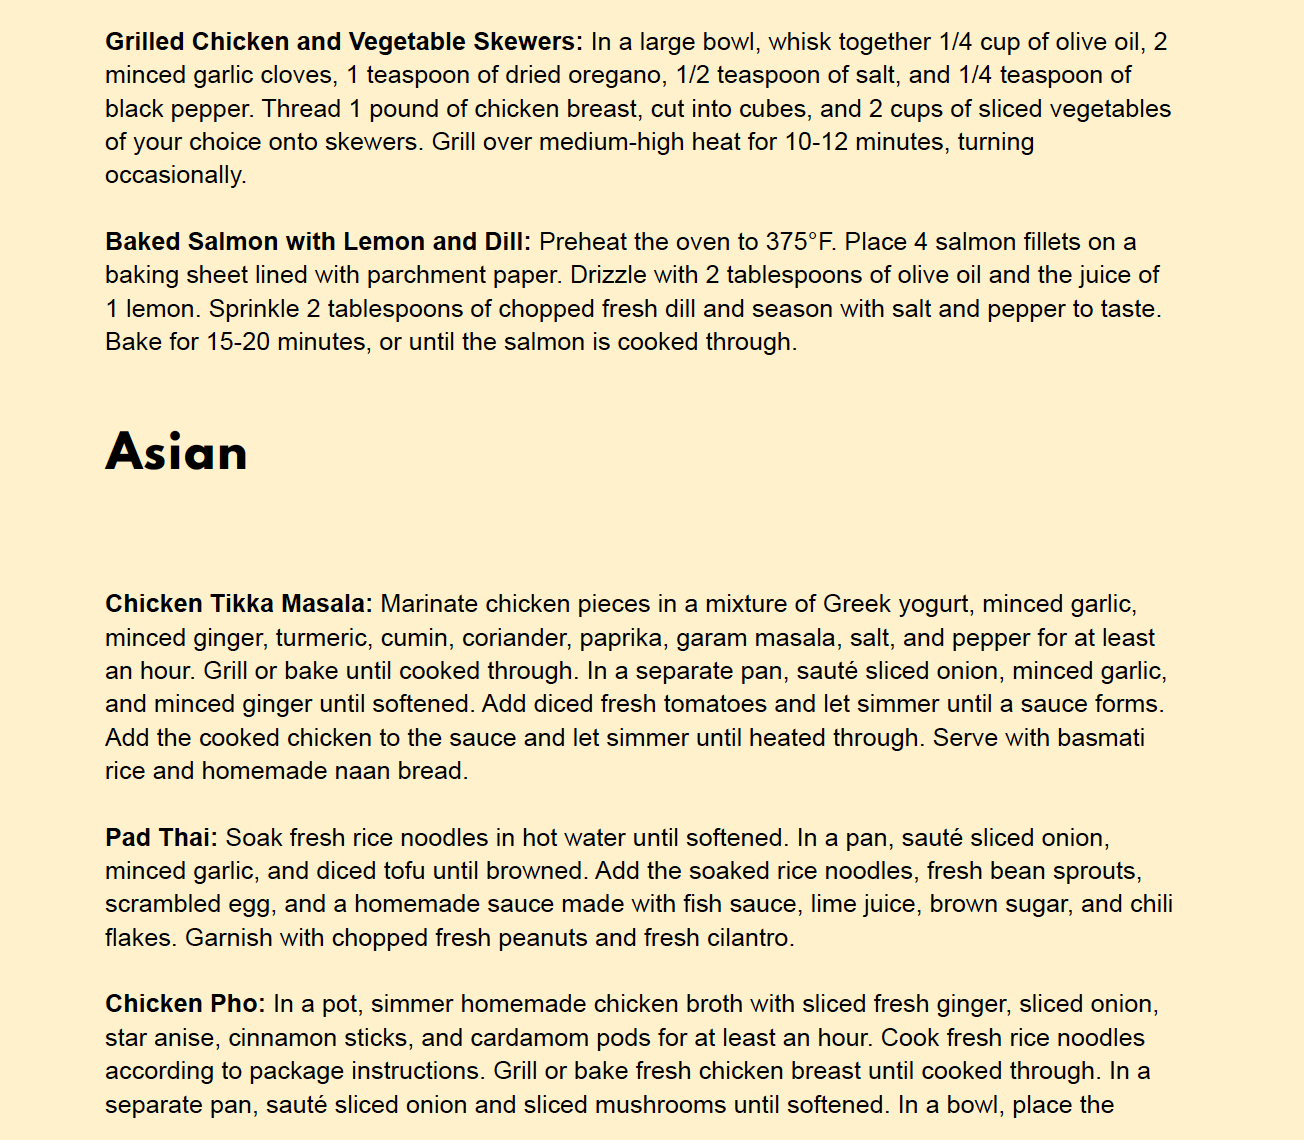 Mt. Olympus Recipe Book V1 - Asian recipe examples